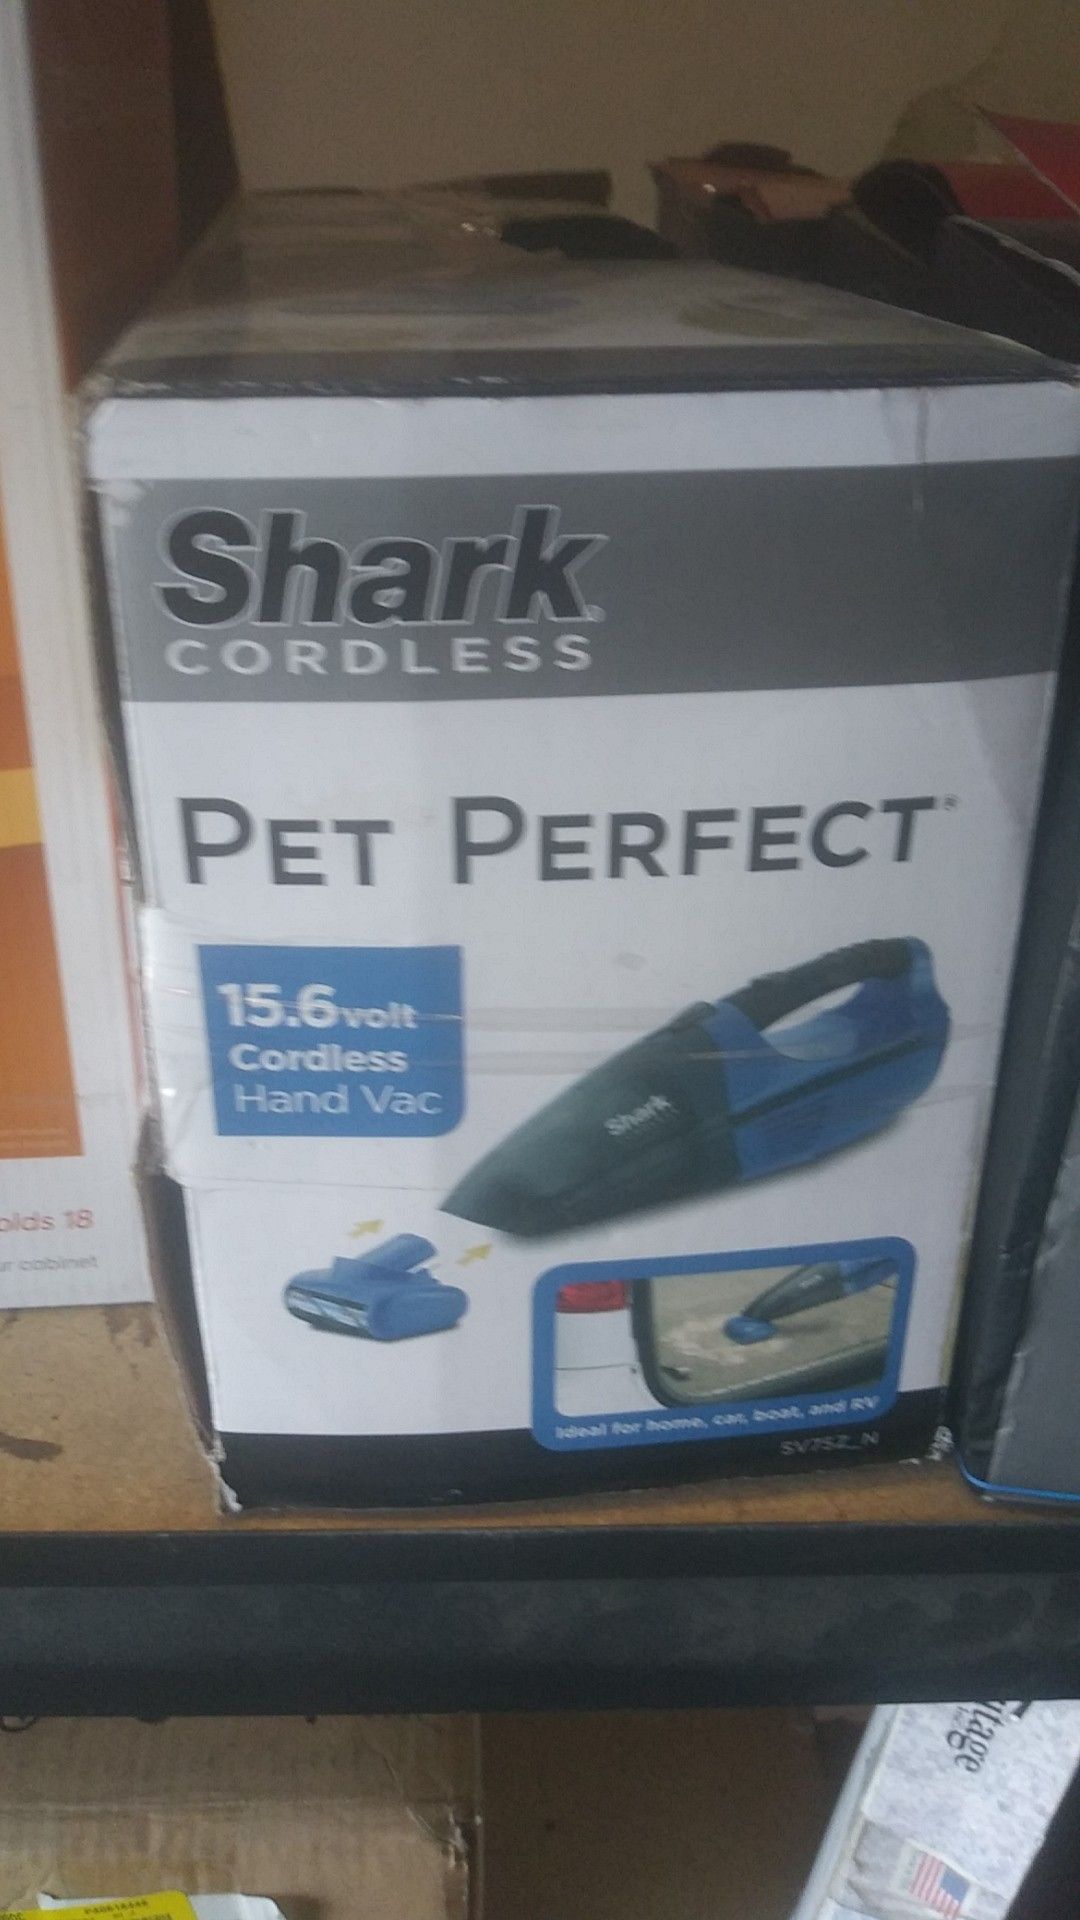 Shark cordless pet perfect 15.6 volt cordless hand vacuum